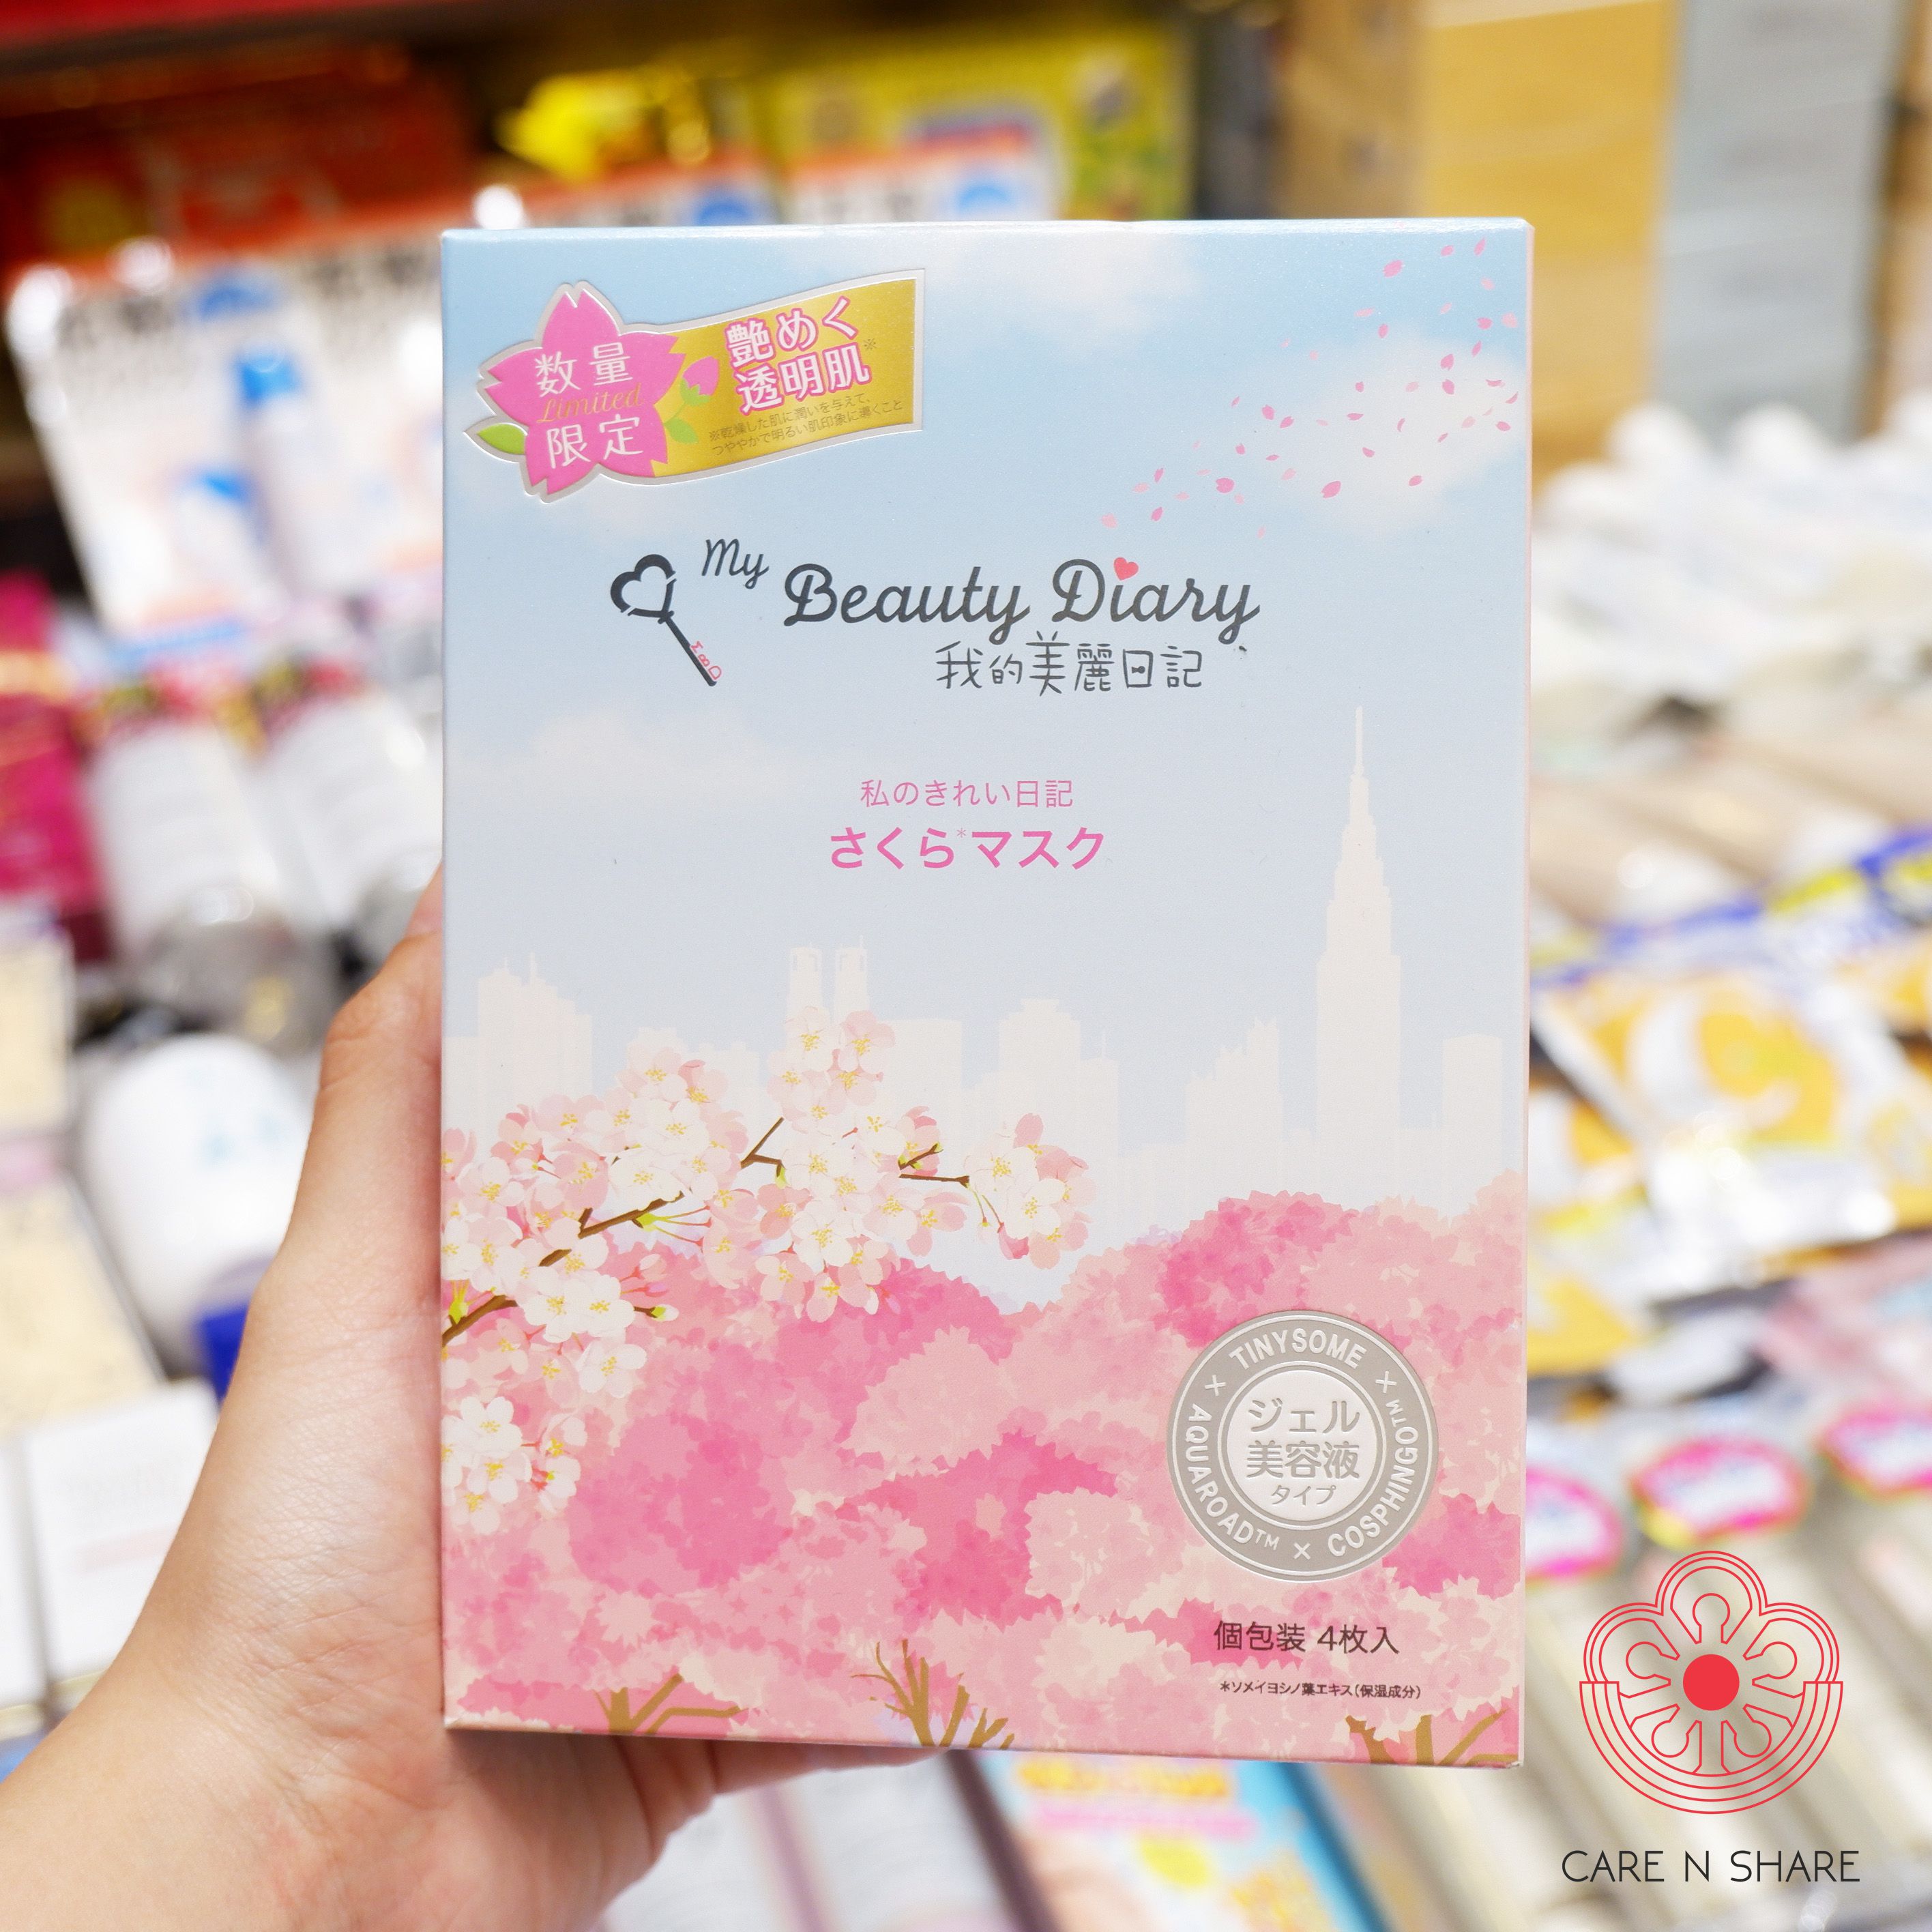 My beauty diary Sakura limited edition